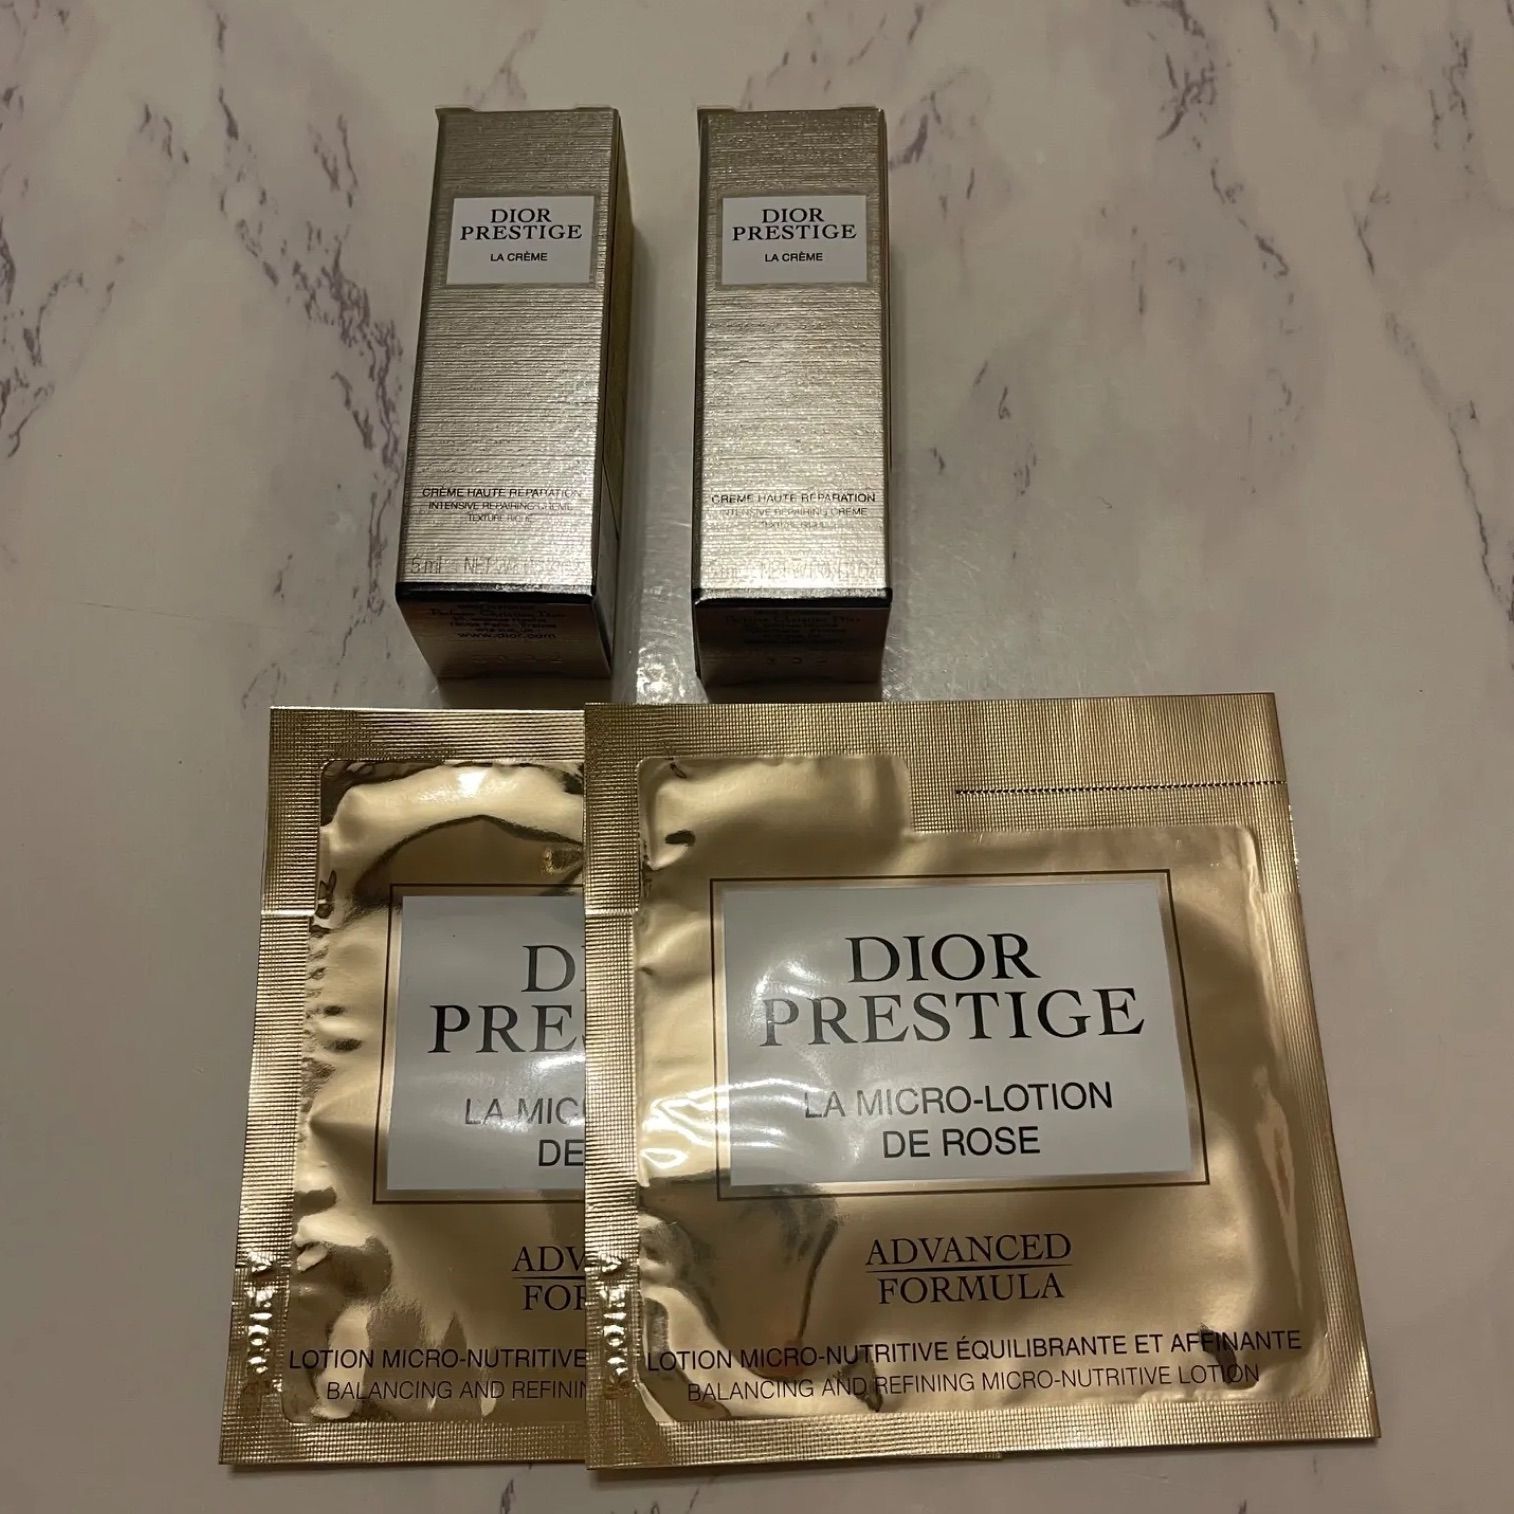 Dior サンプル 最高峰プレステージ マイクロローション ド